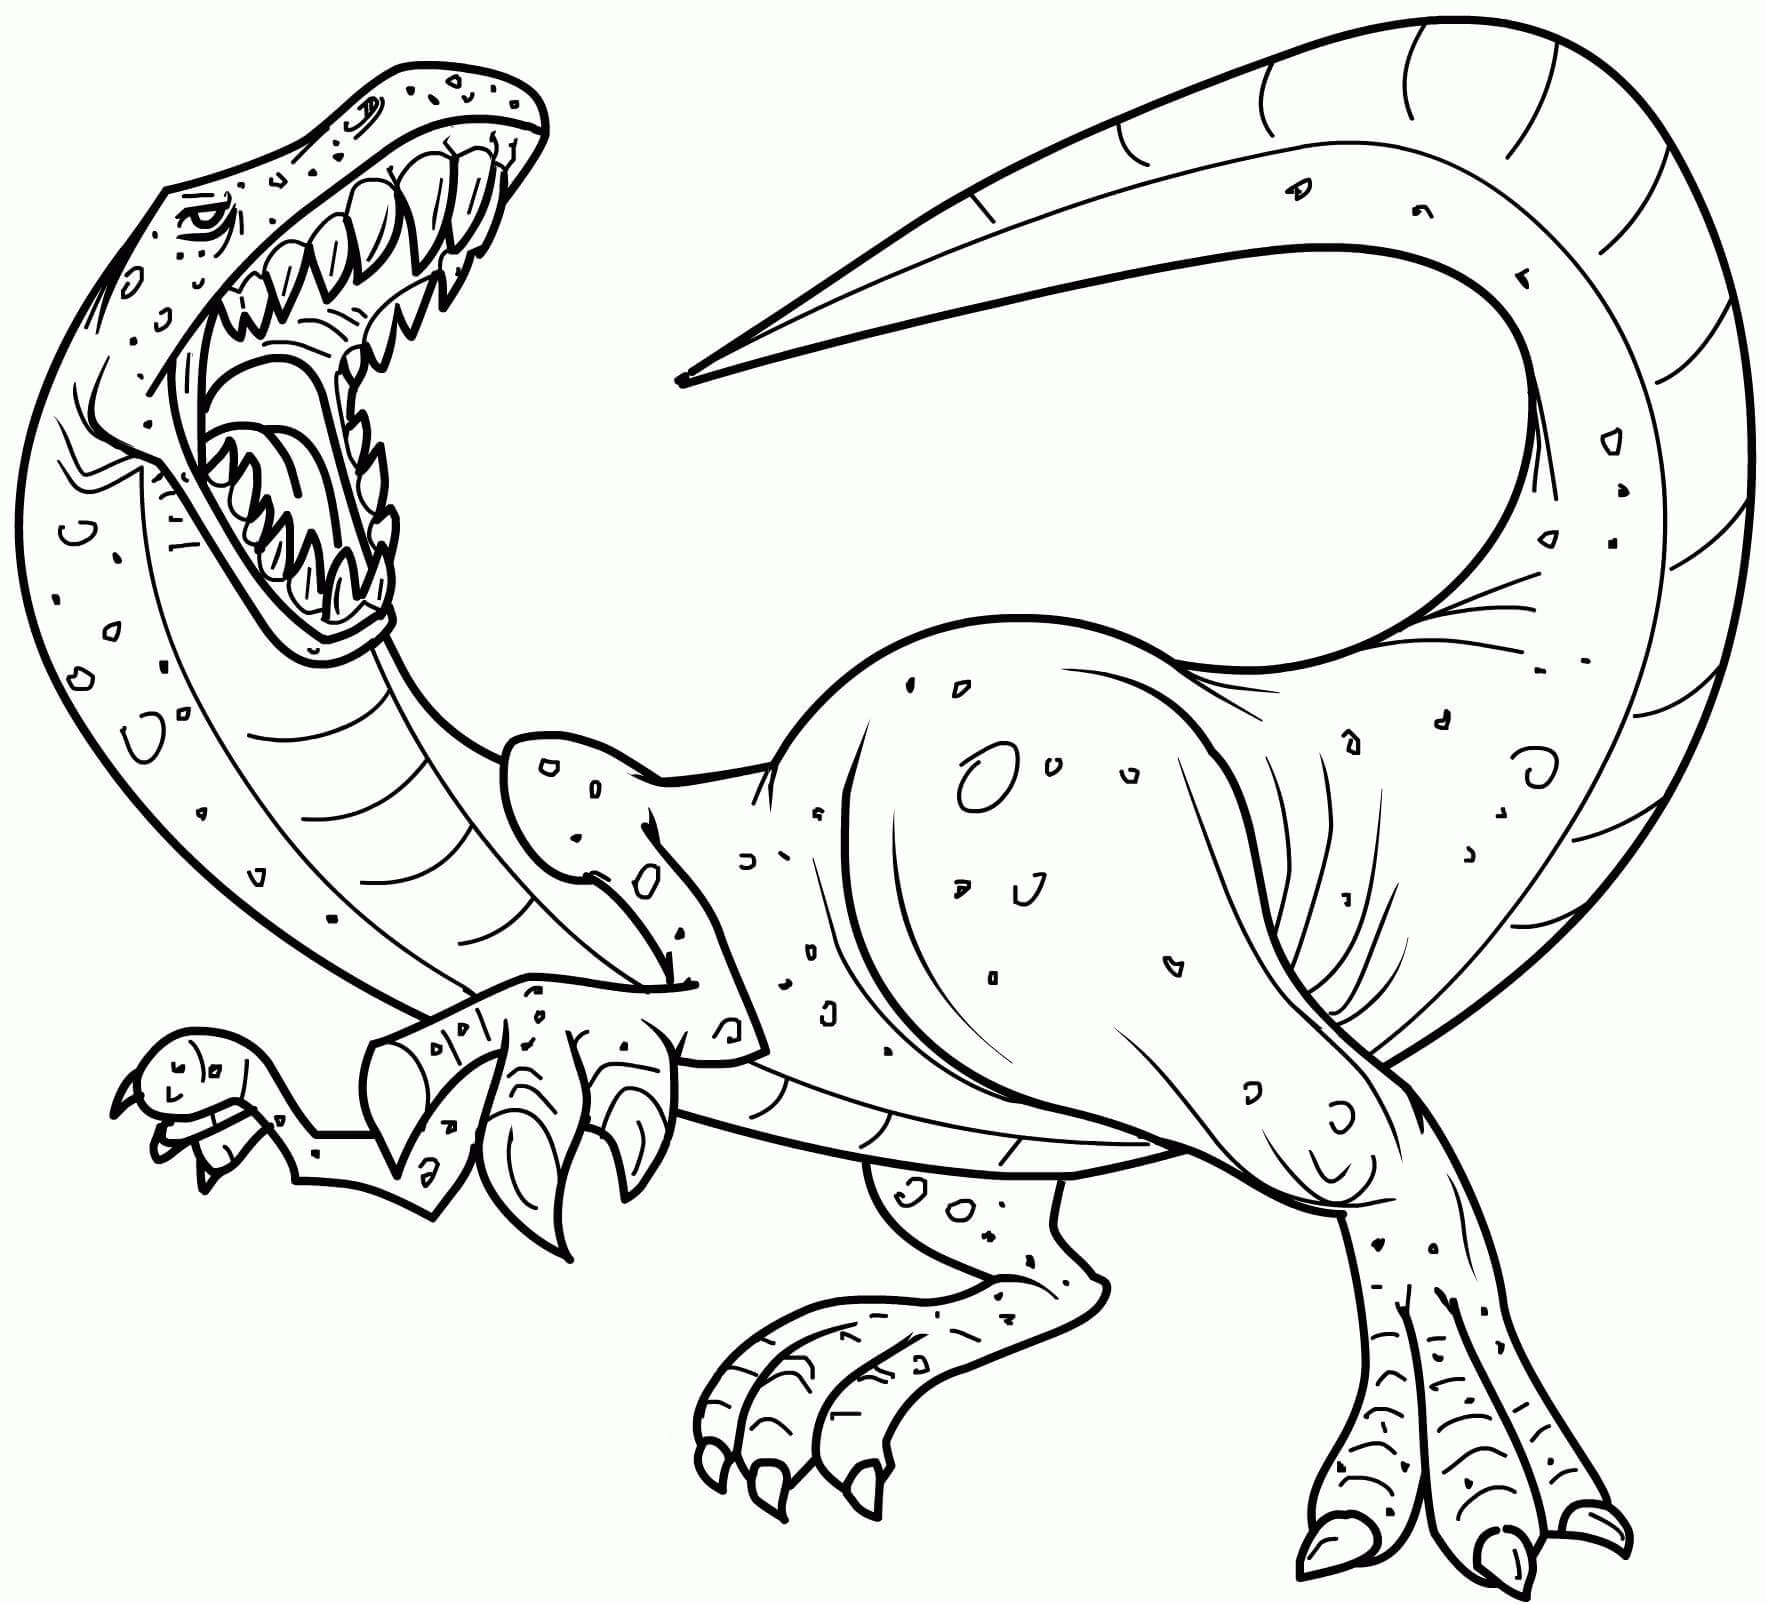 Un Dinosaure coloring page